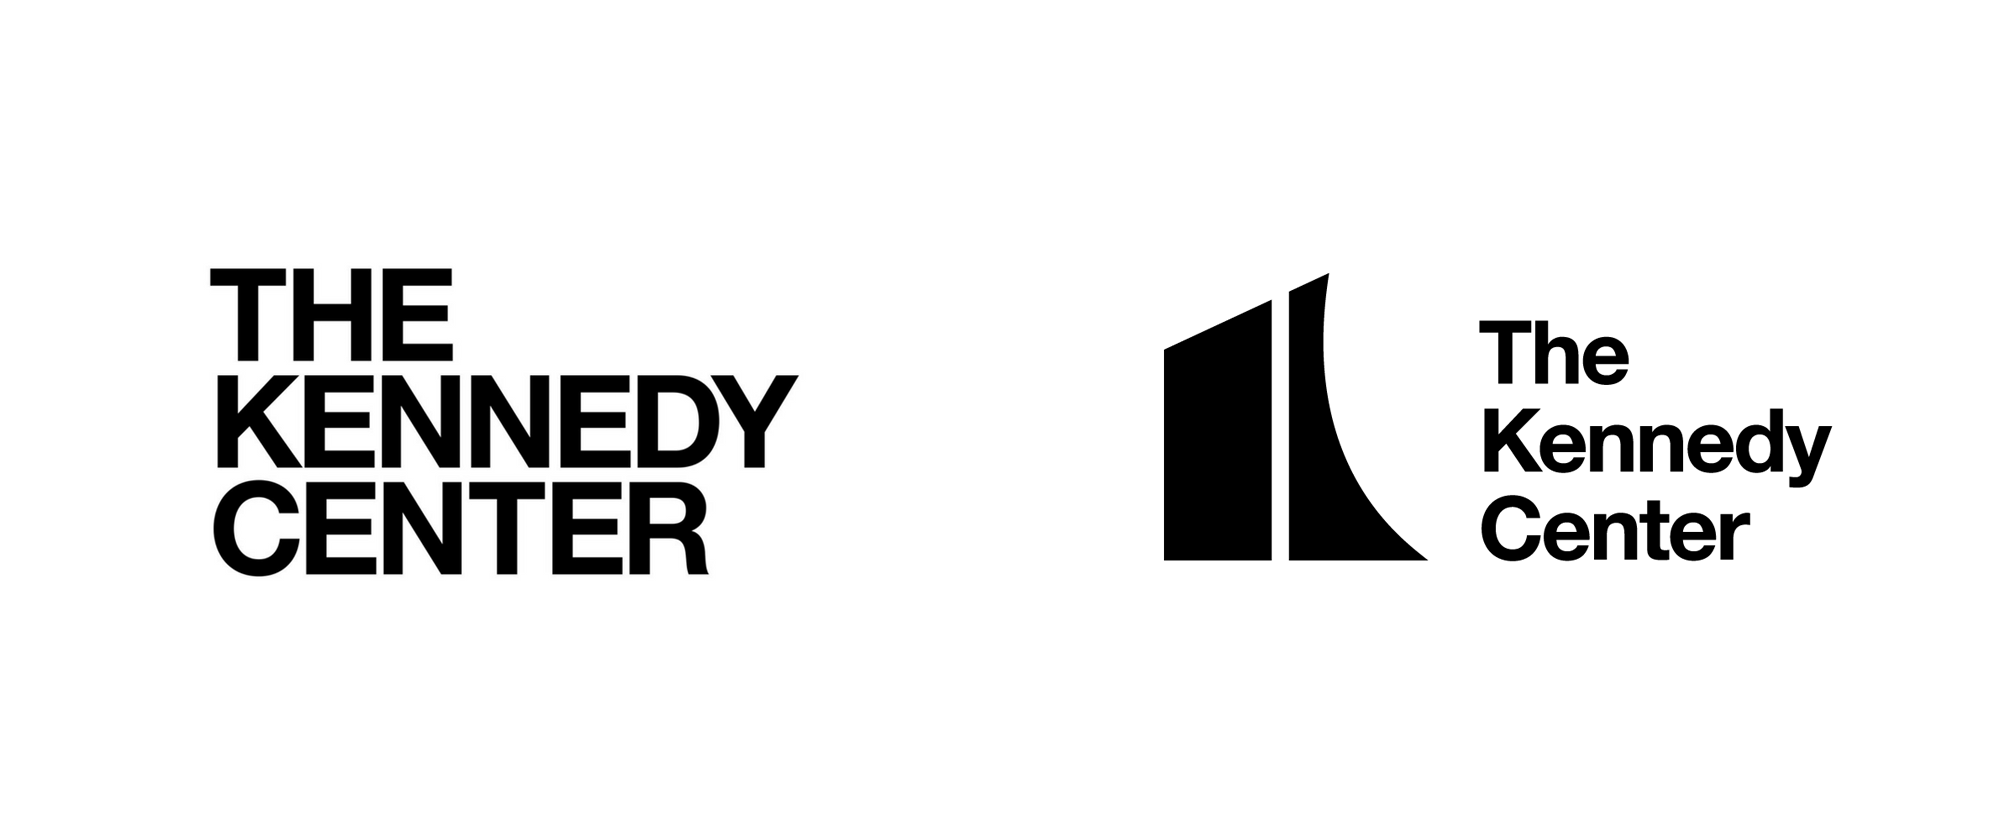 White Center Logo - Brand New: New Logo for The Kennedy Center